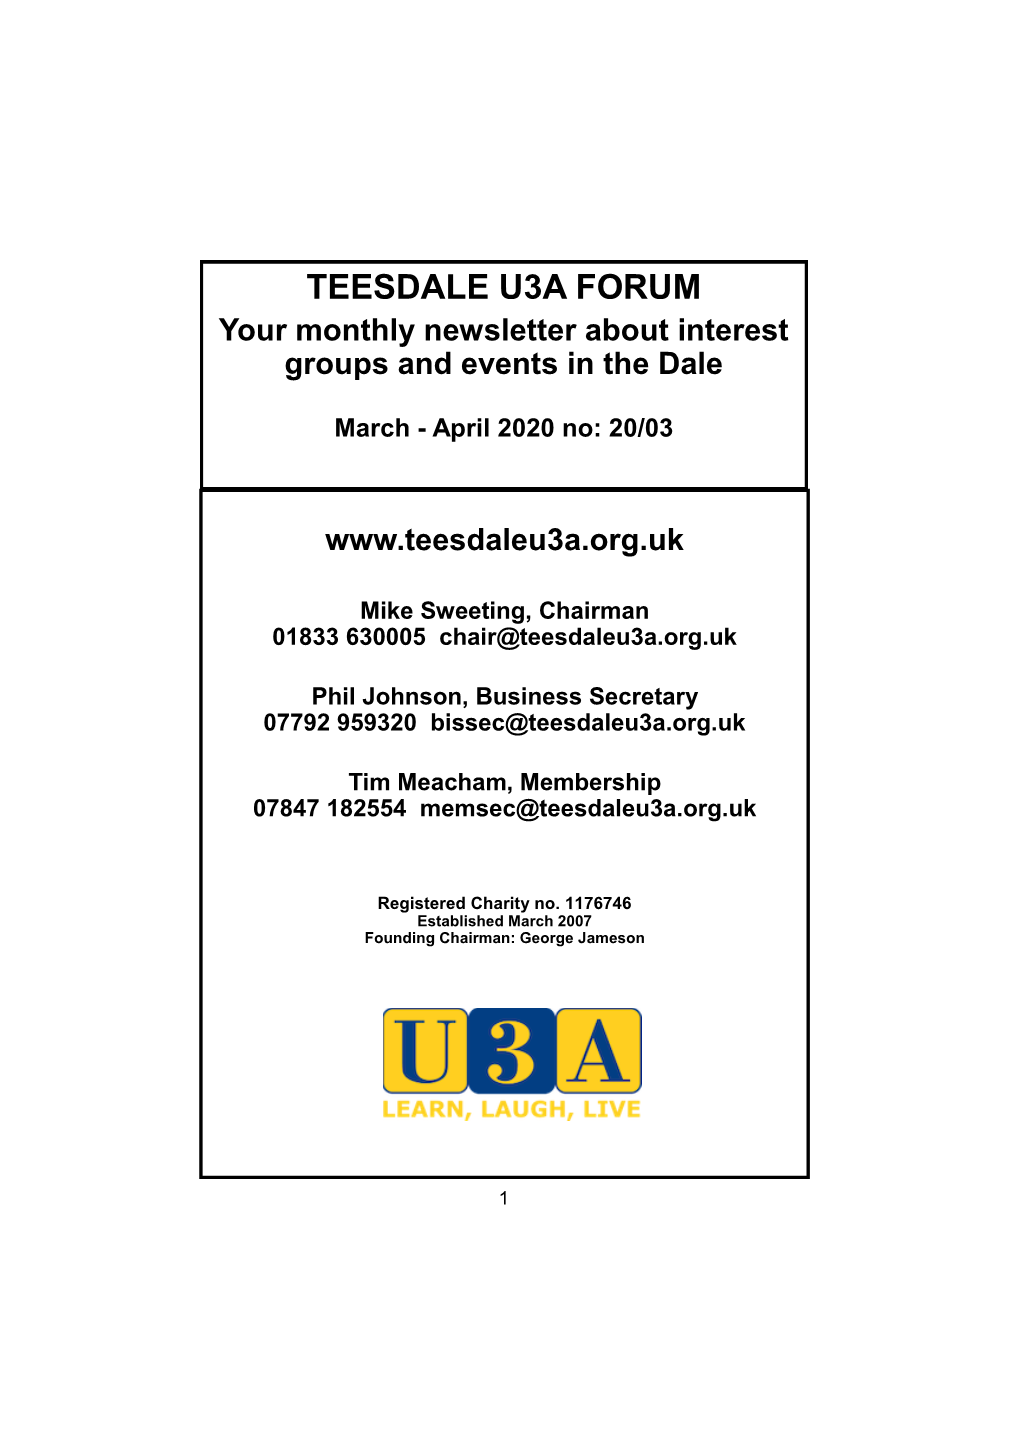 Teesdale U3a Forum